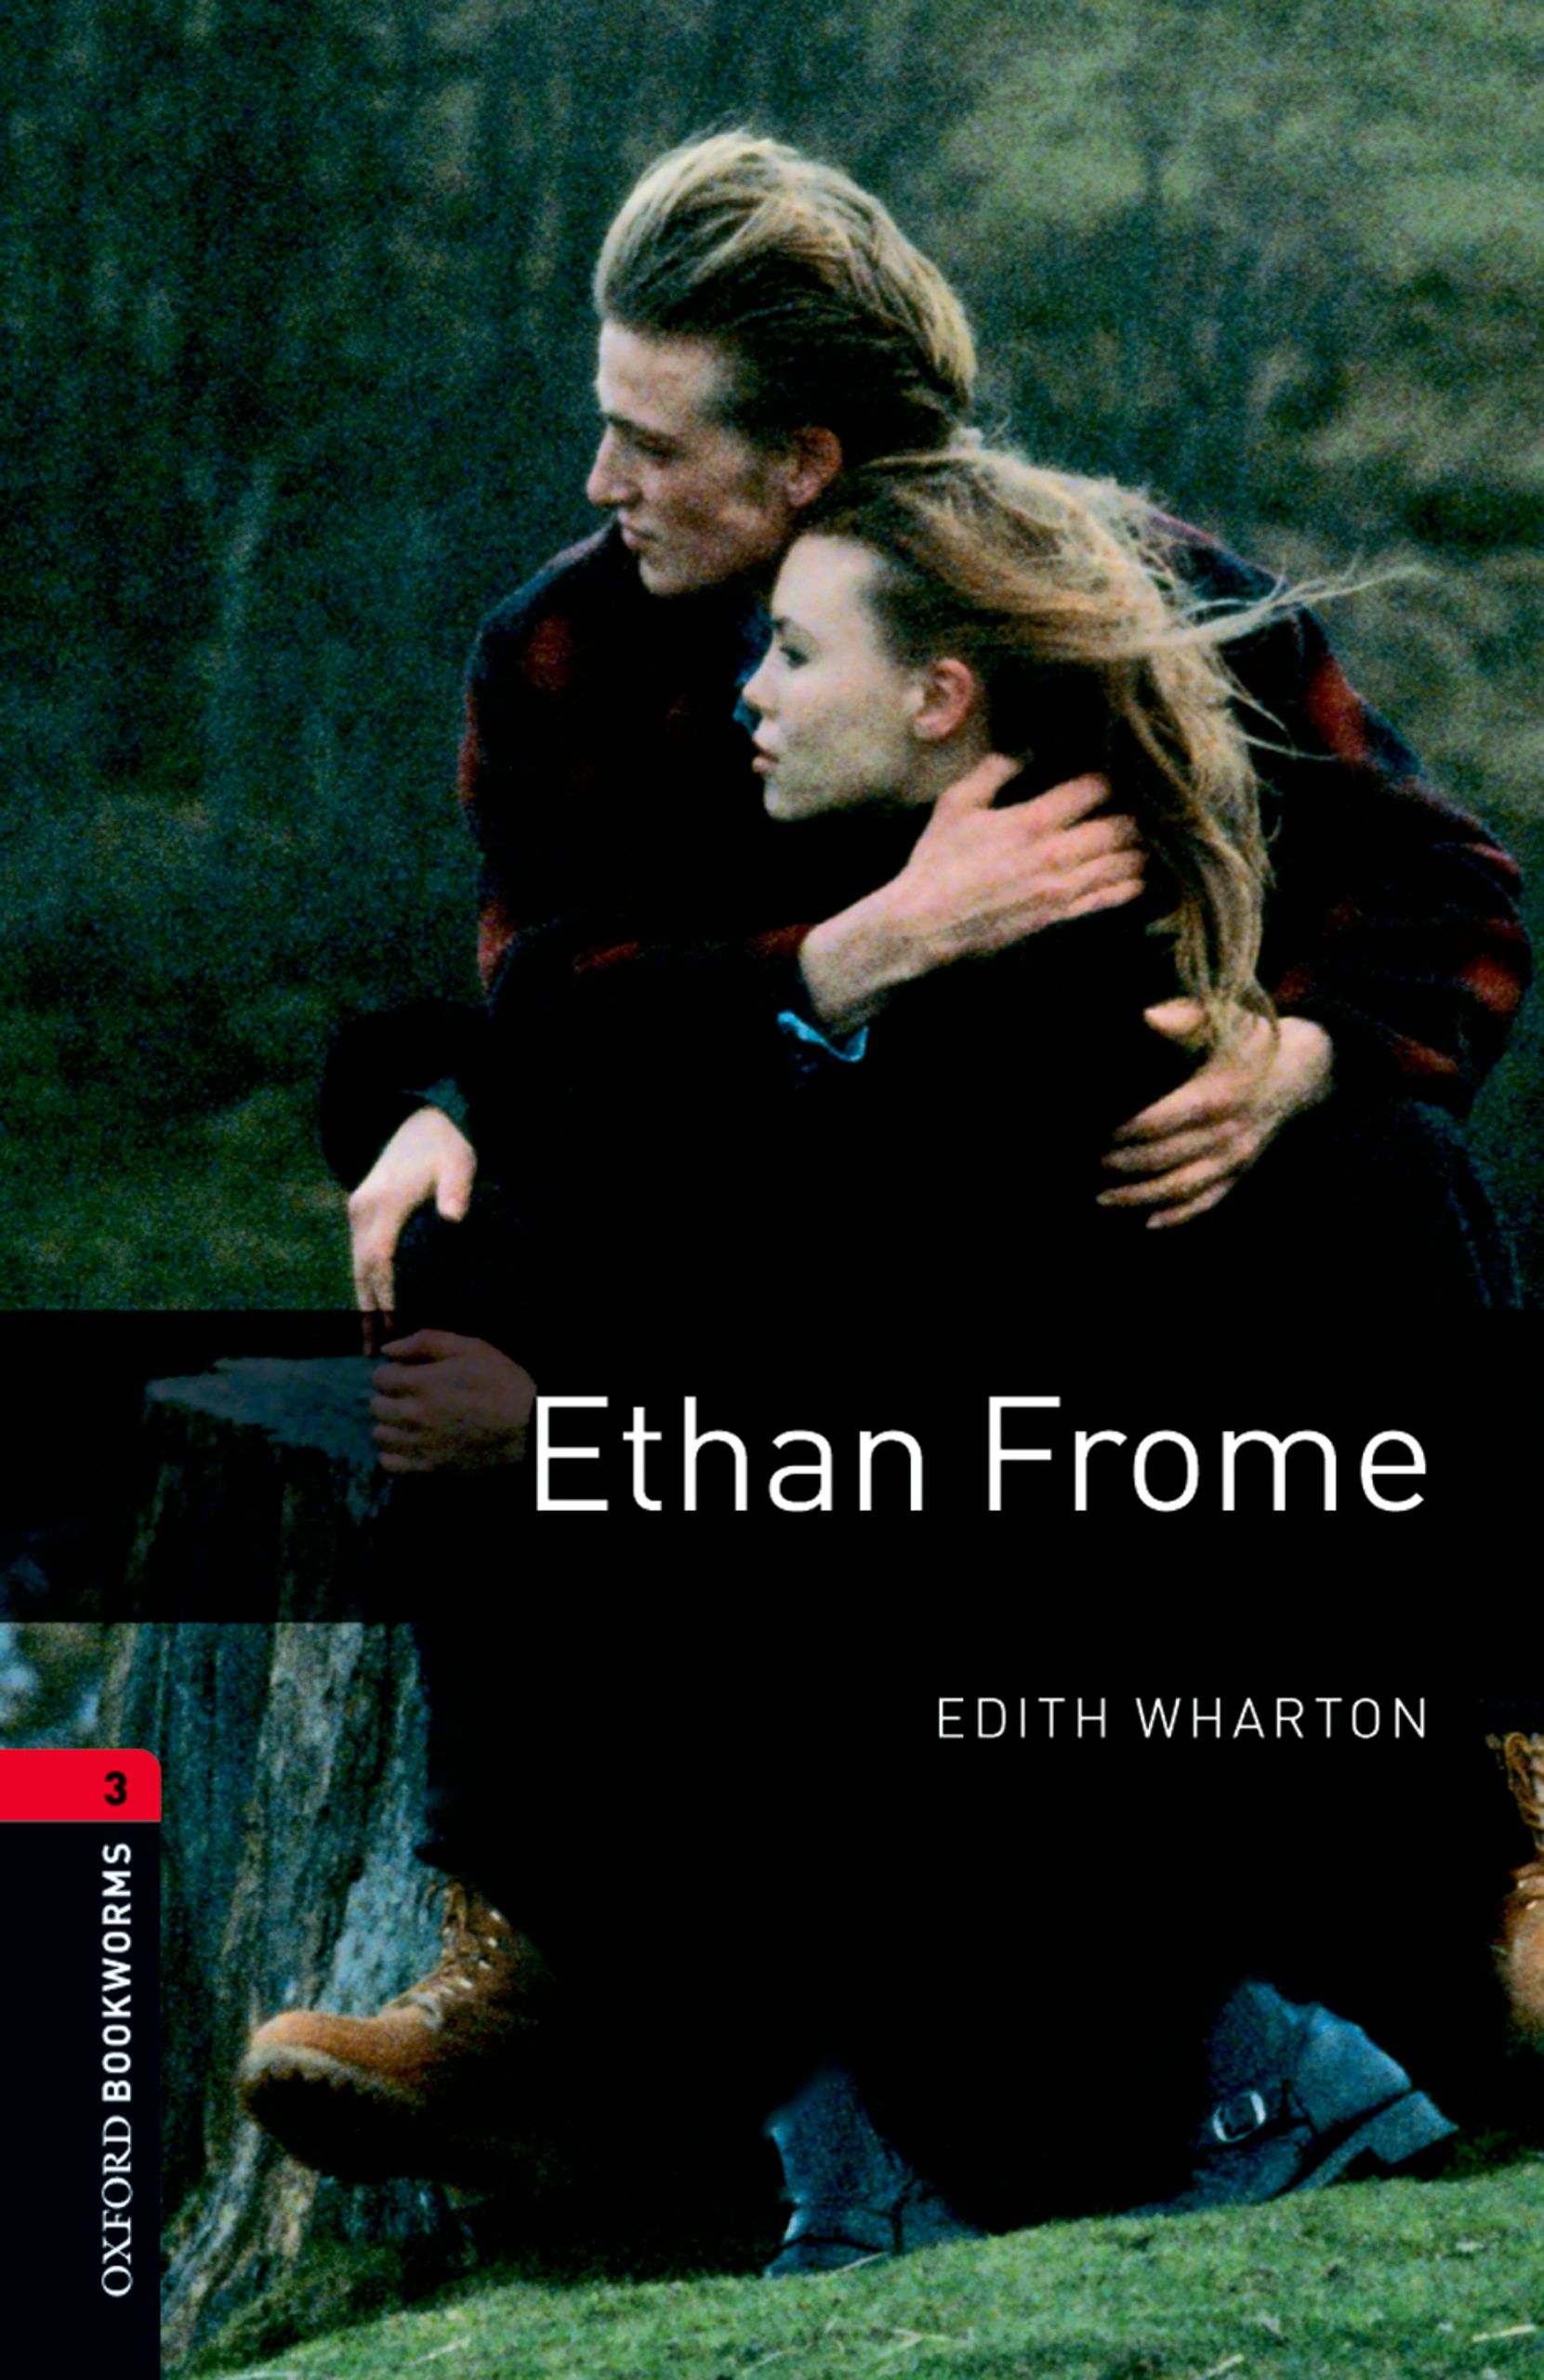 Книга Ethan Frome из серии , созданная Edith Wharton, может относится к жанру Иностранные языки, Зарубежная образовательная литература, Иностранные языки. Стоимость электронной книги Ethan Frome с идентификатором 23573678 составляет 405.87 руб.